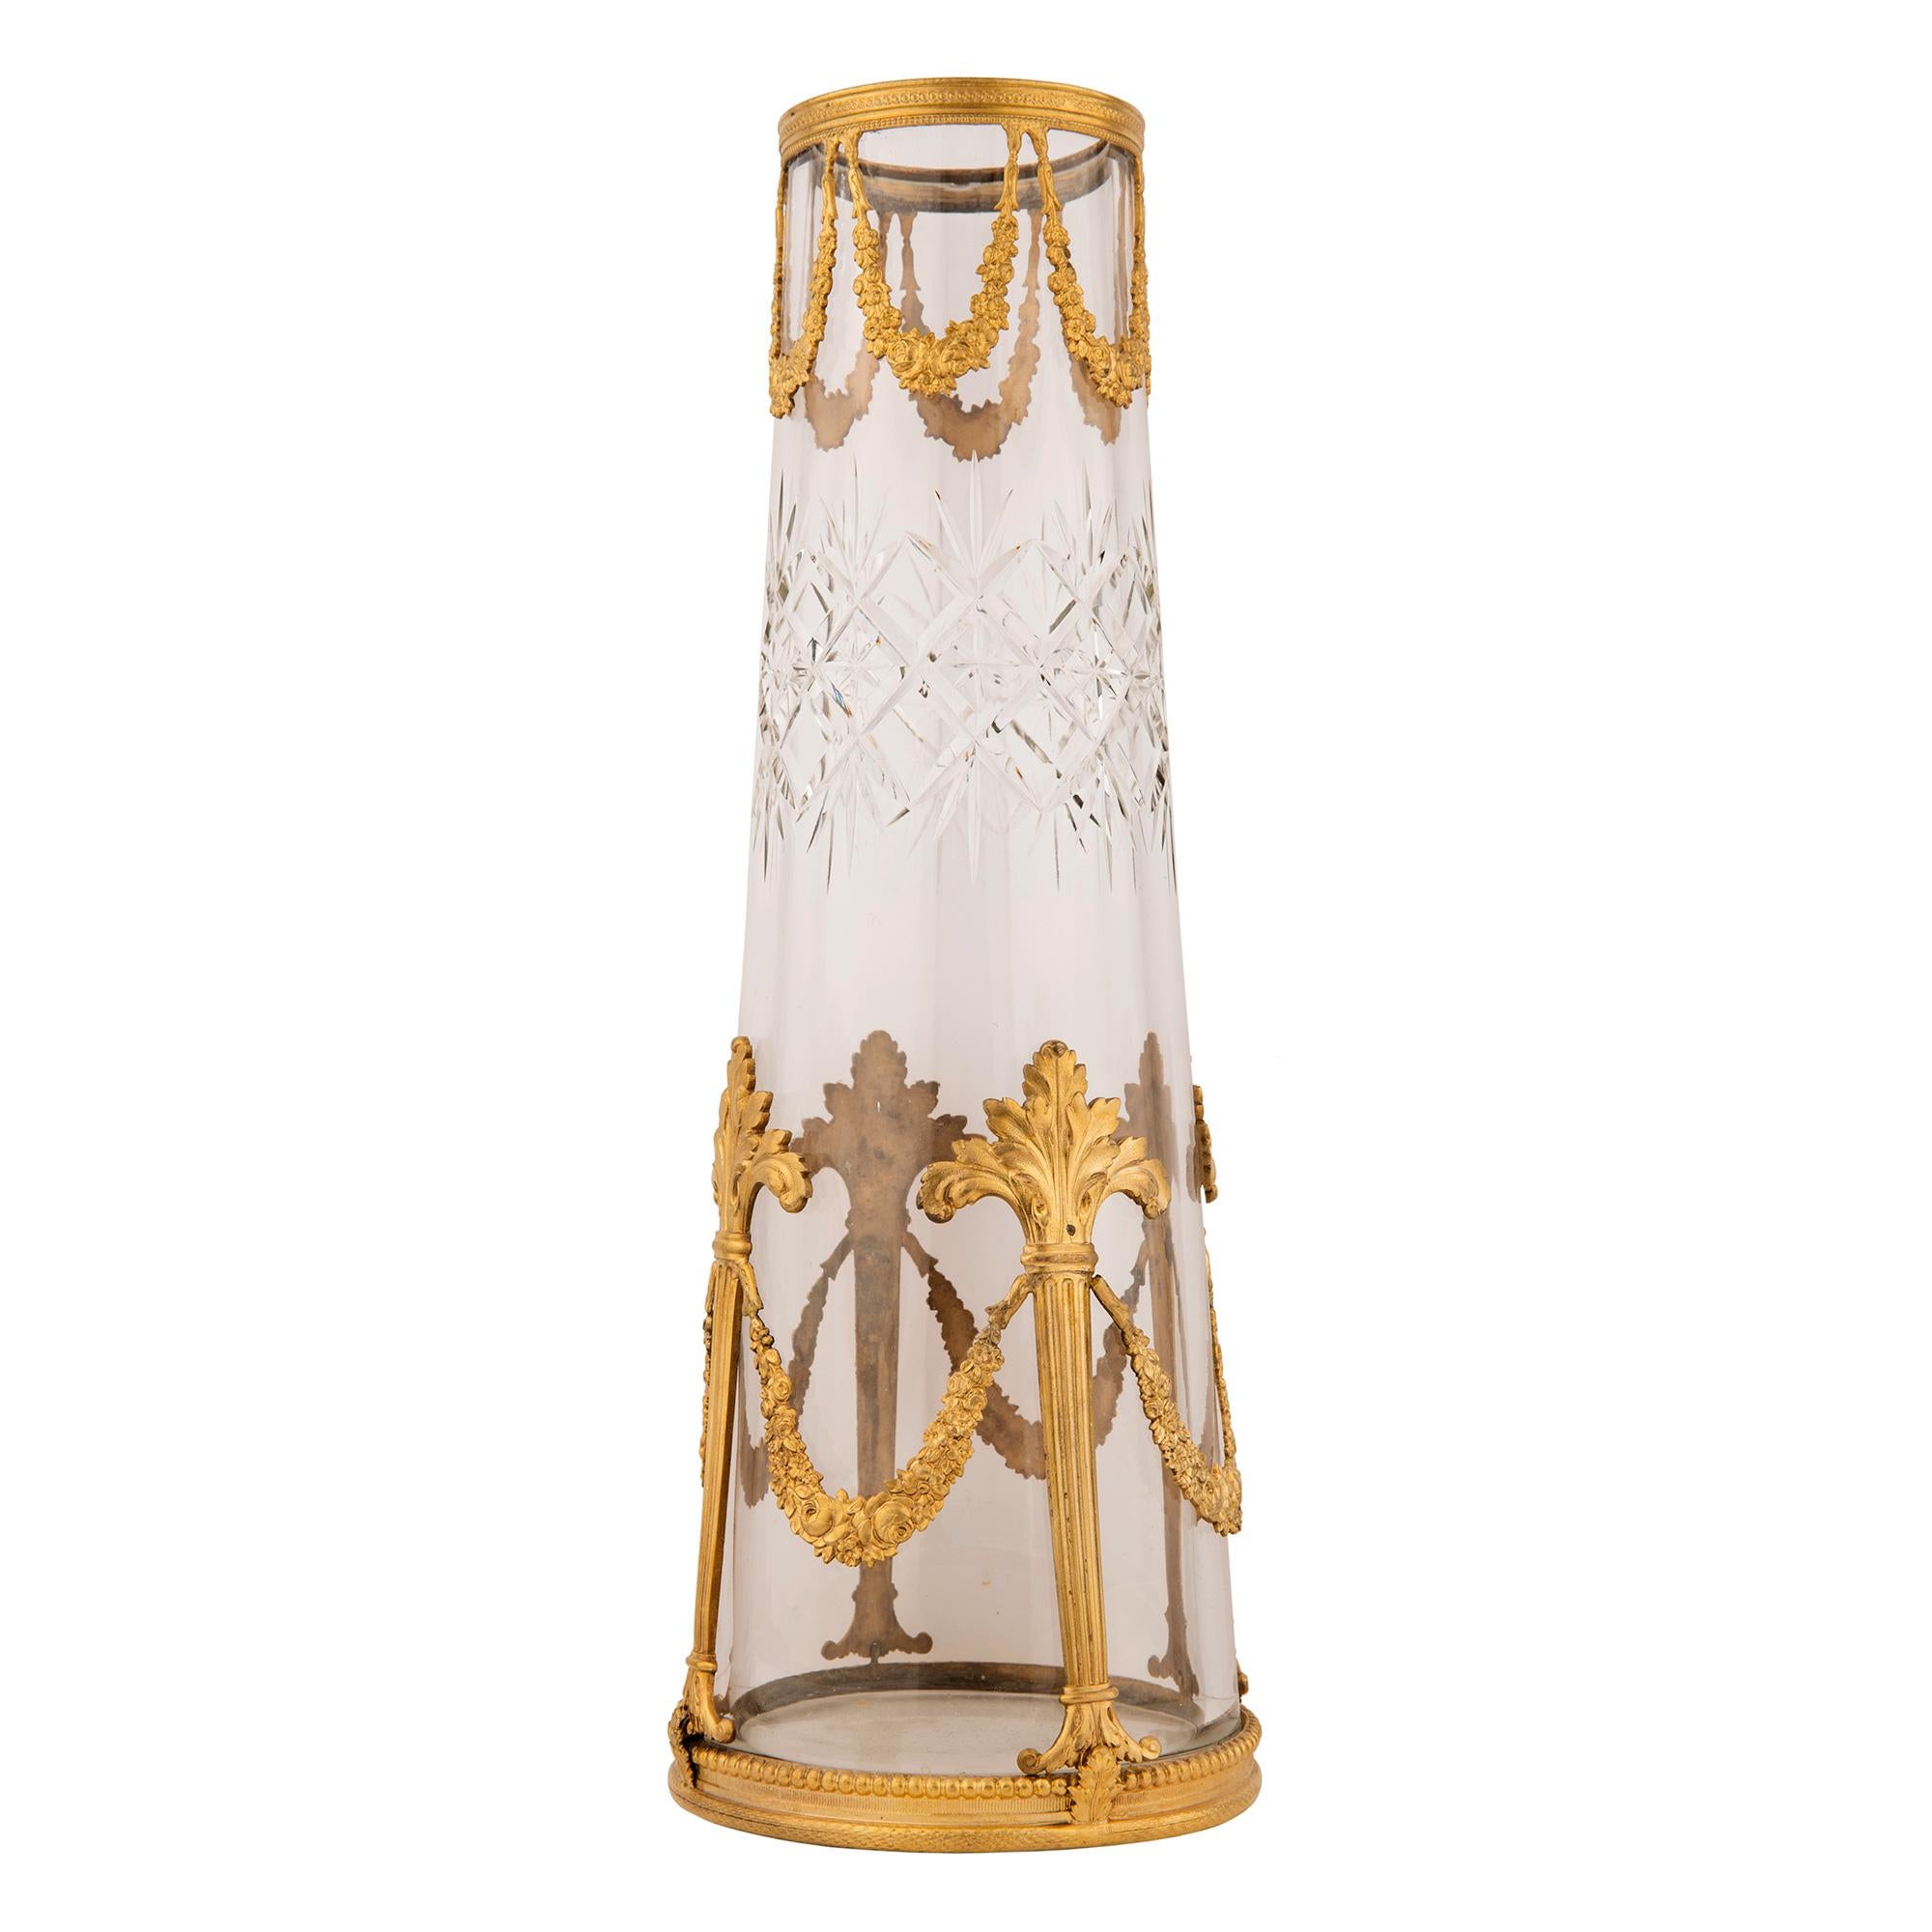 Une paire exquise de vases en cristal et bronze doré de style Louis XVI du 19ème siècle. Chaque vase en cristal de forme circulaire conique présente un magnifique cristal taillé en épaisseur avec des motifs en forme de diamant. Chaque vase s'effile